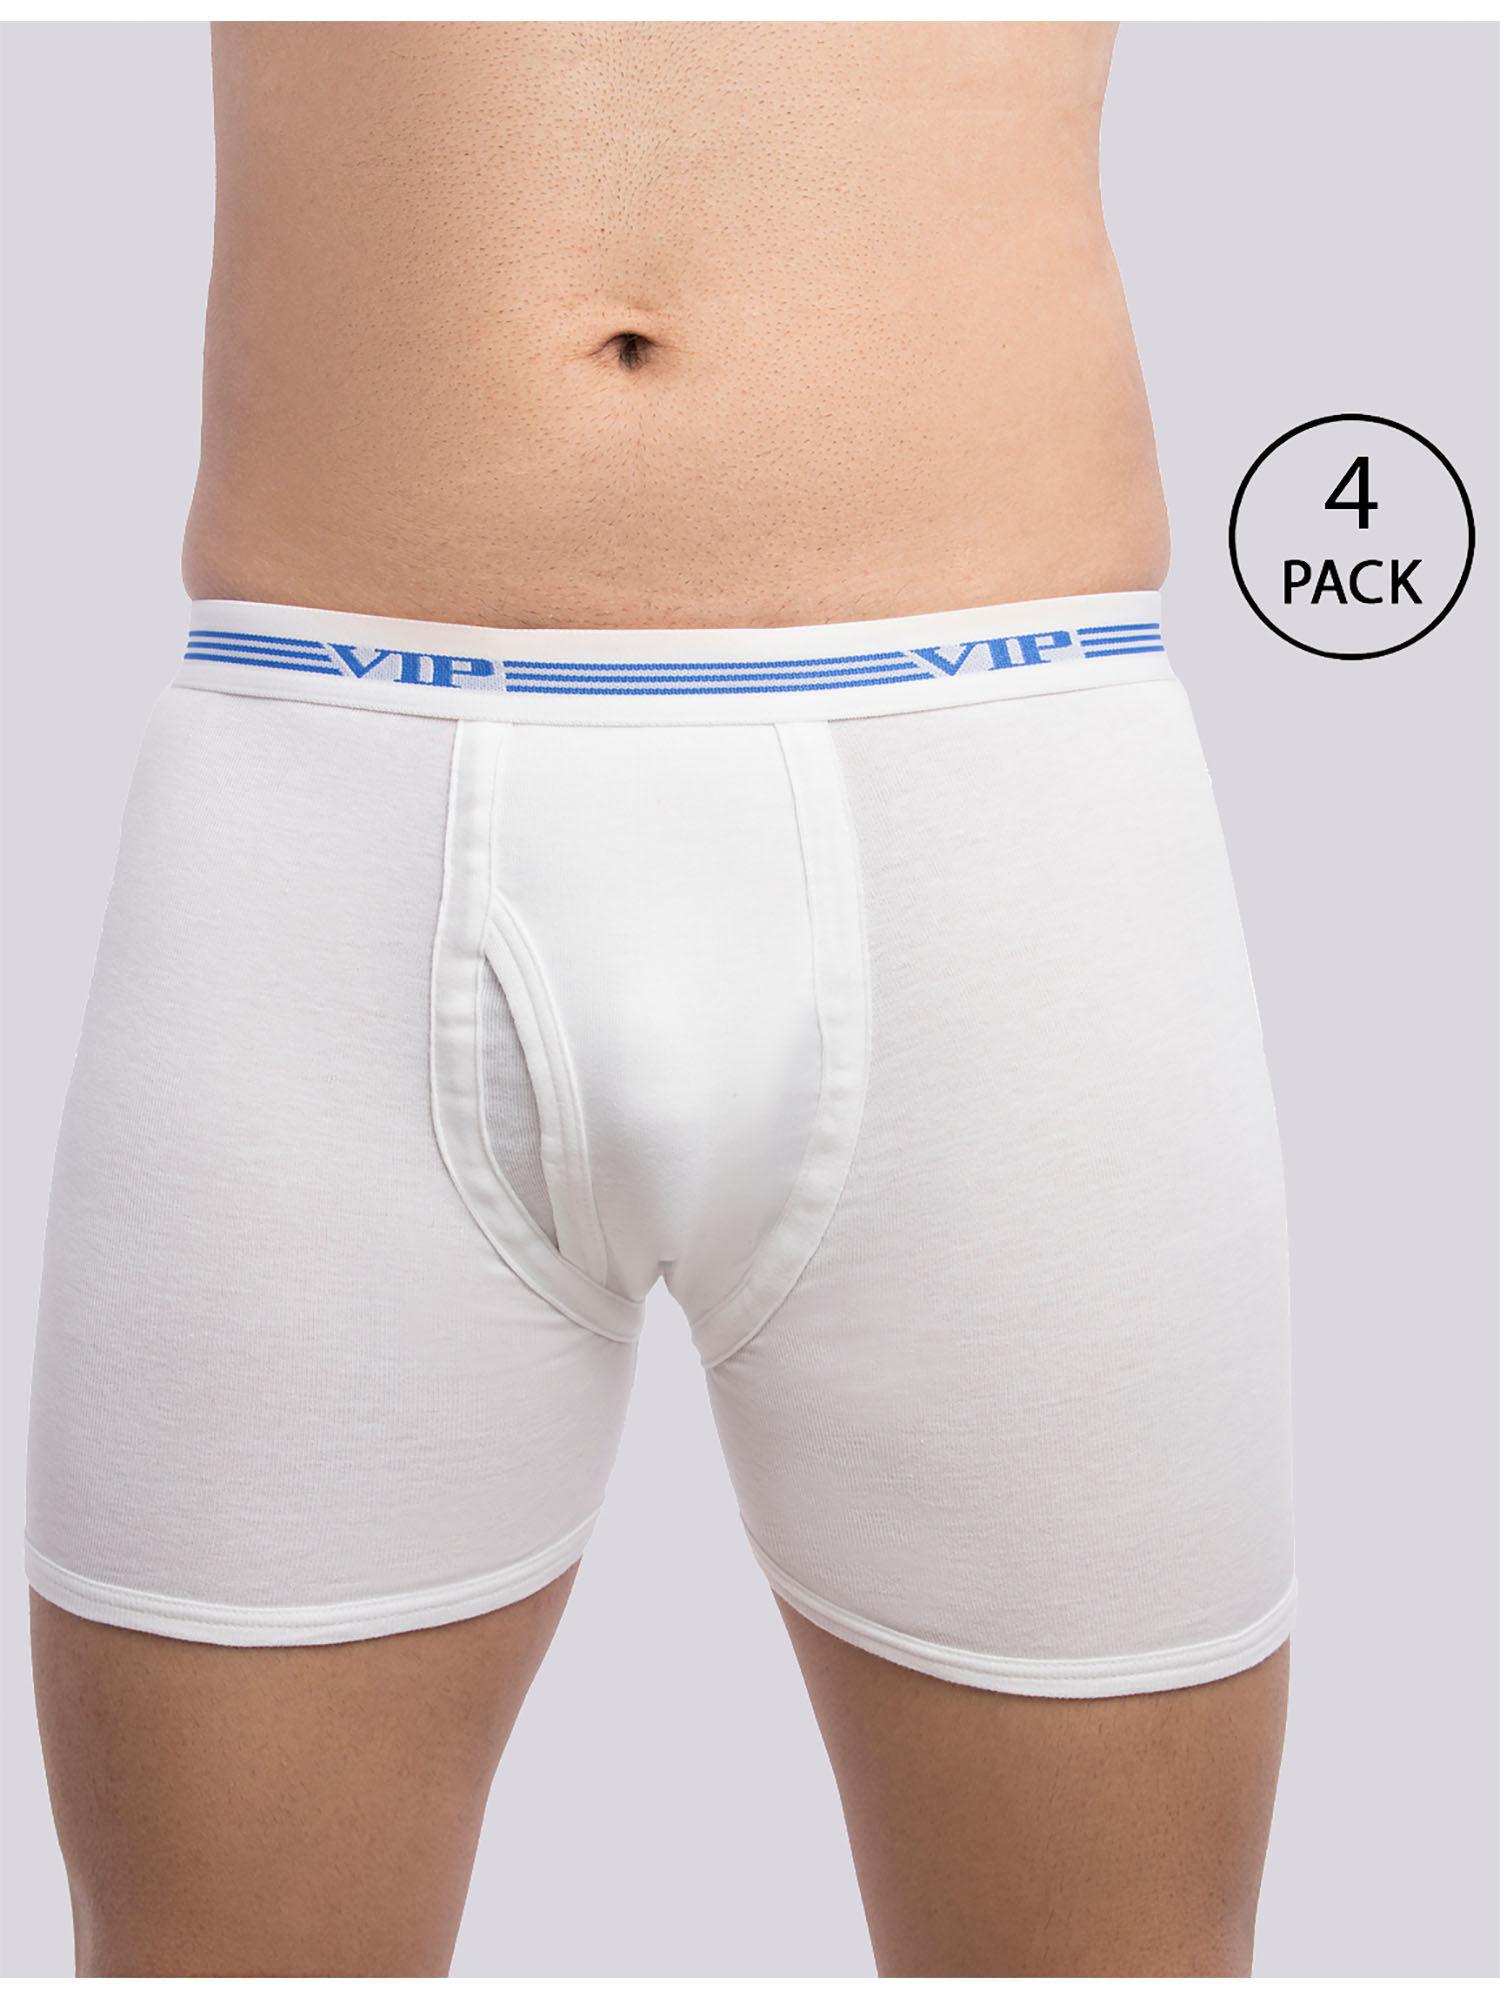 men's advanta solid white 100% cotton rib trunks (pack of 4)